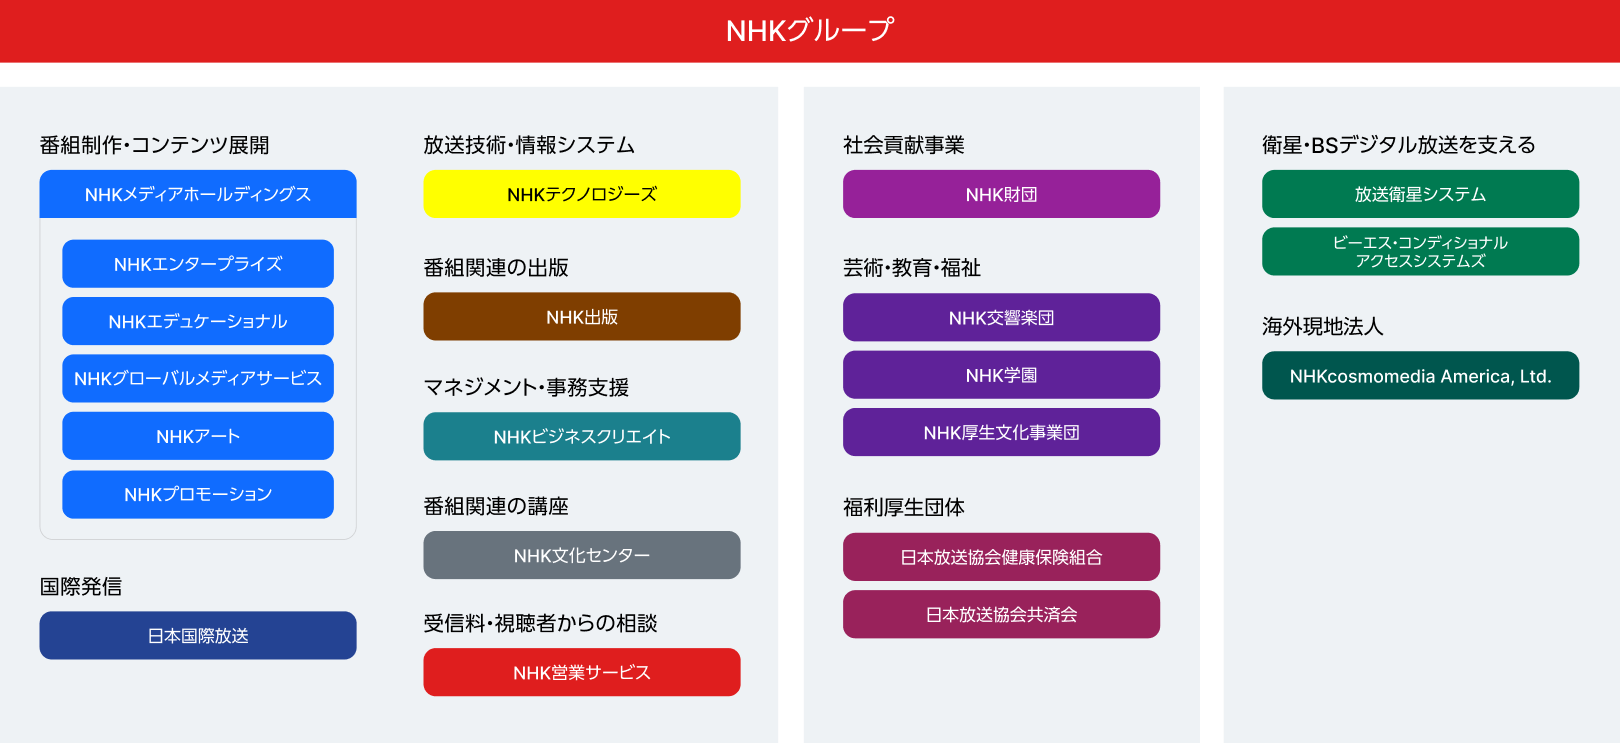 NHKグループの組織図になります